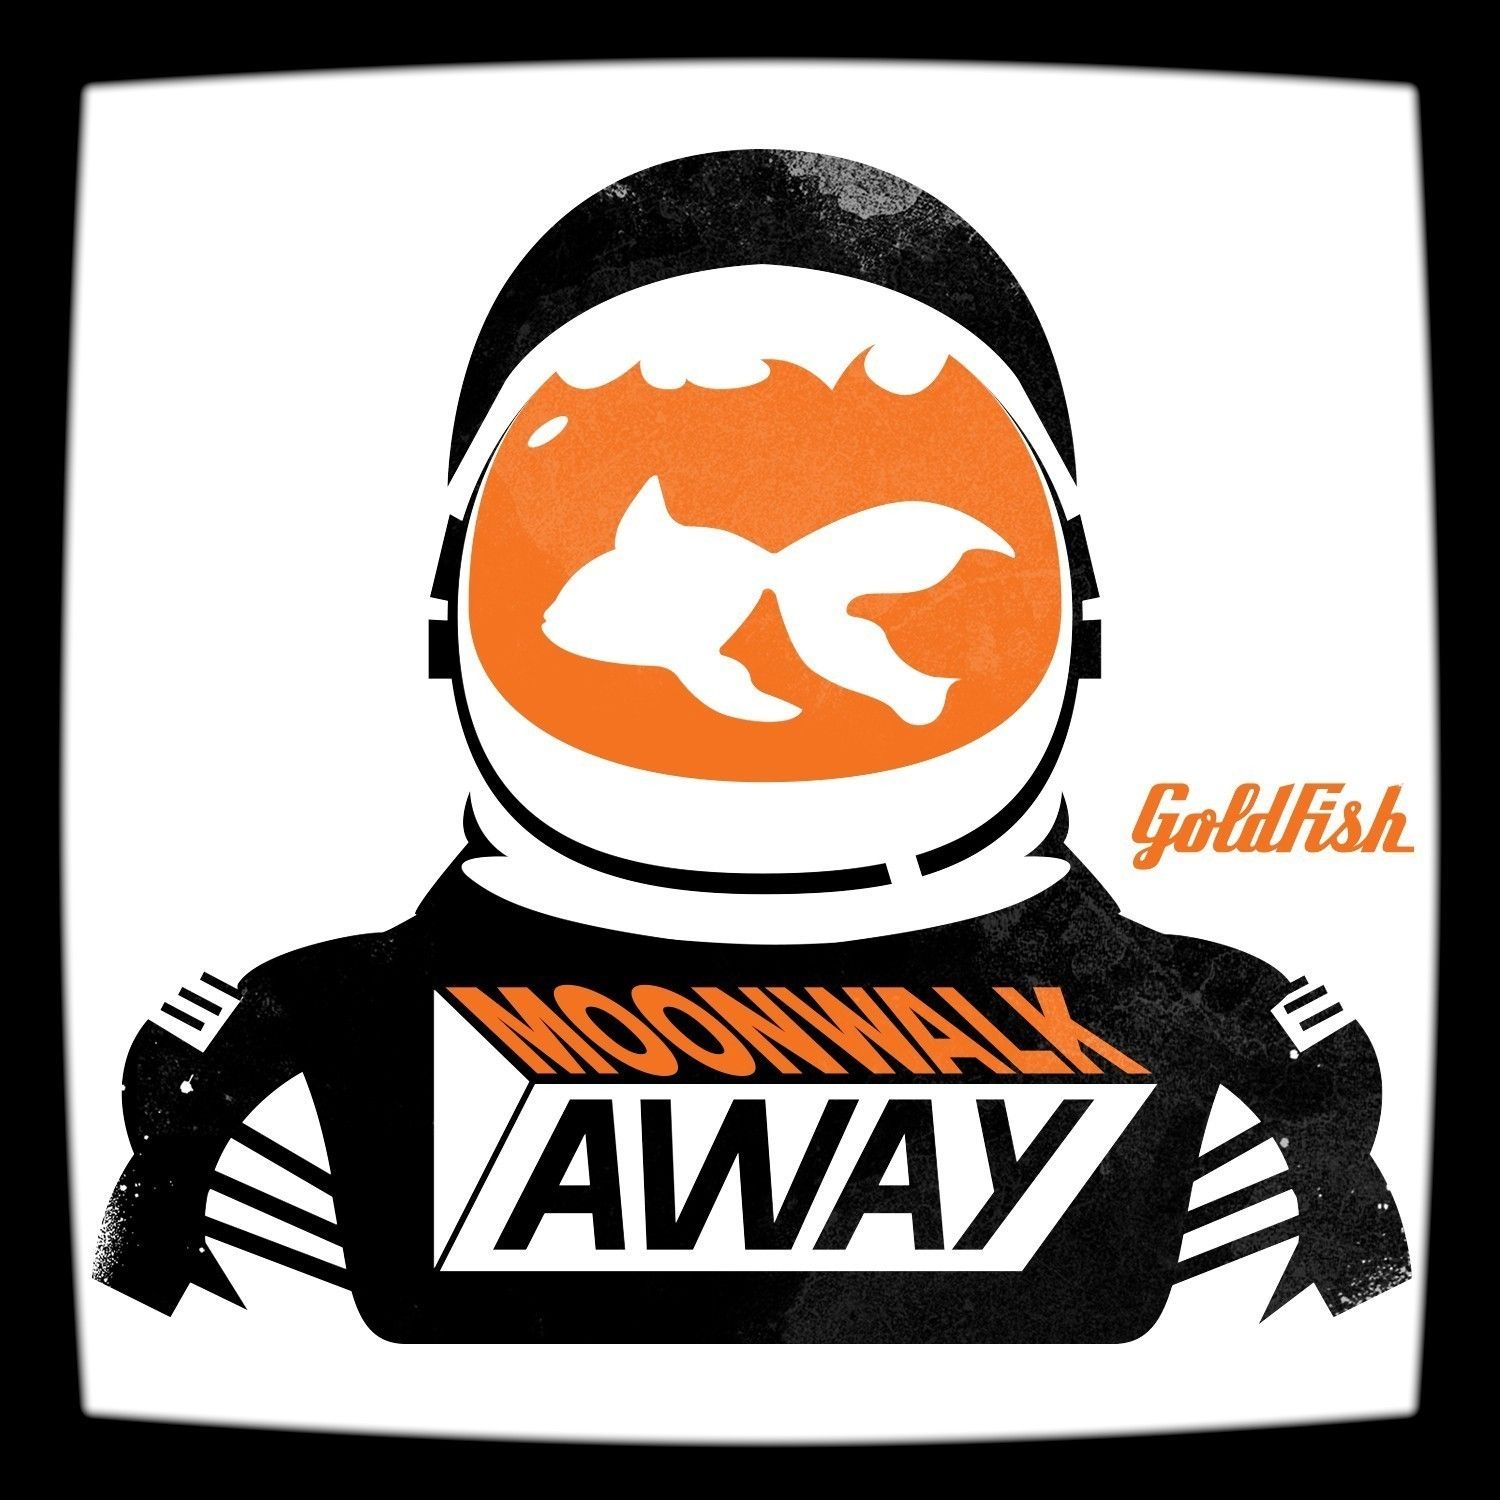 goldfish-moonwalk-away-packshot.jpg